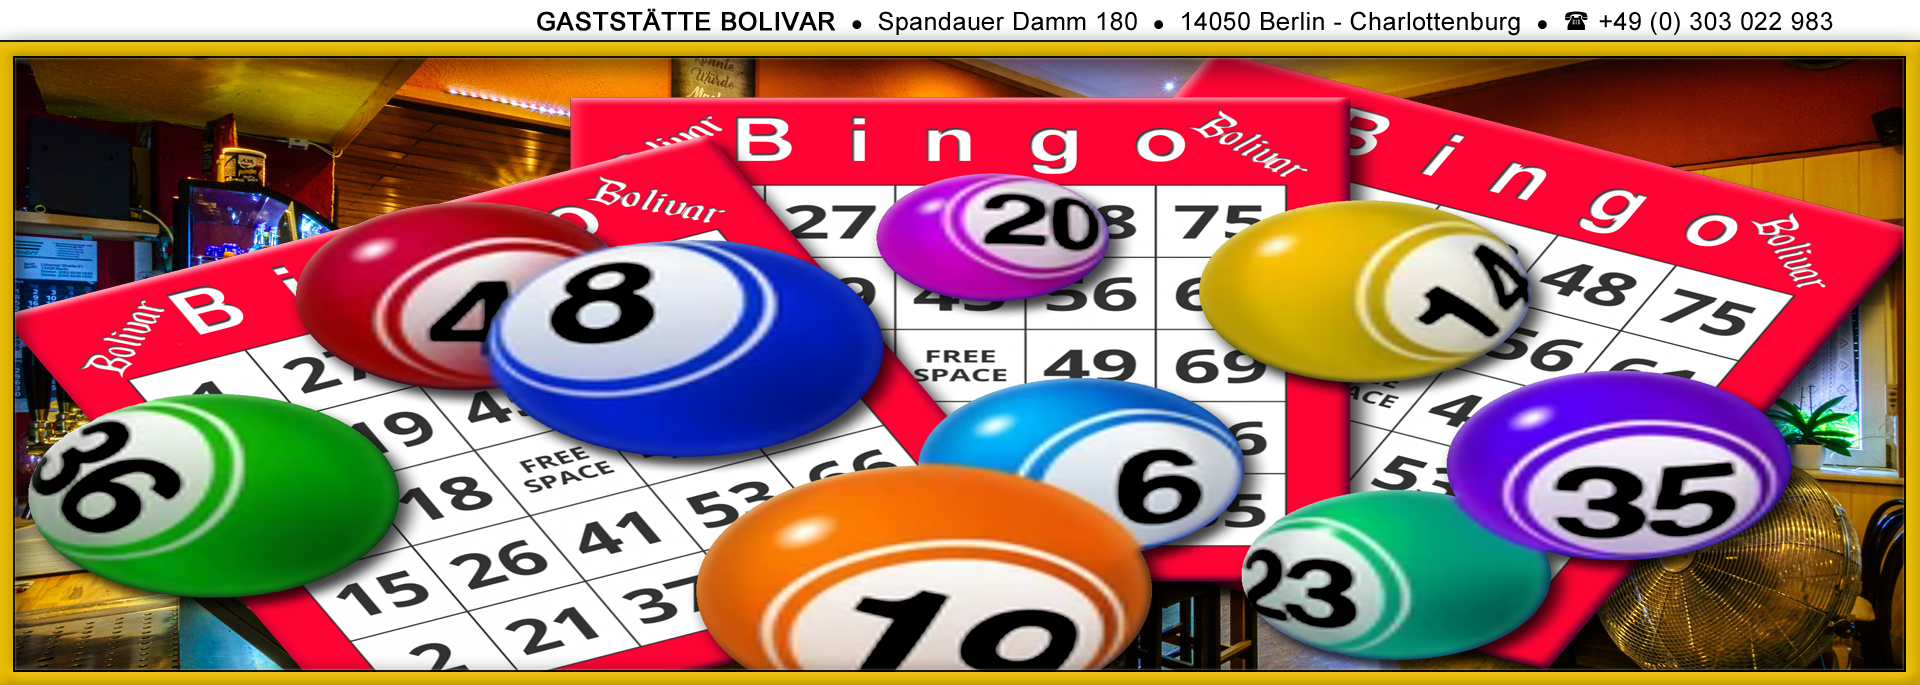 Neuer Termin - Bingo in Charlottenburg, am 31. März 2023, ab 18 Uhr